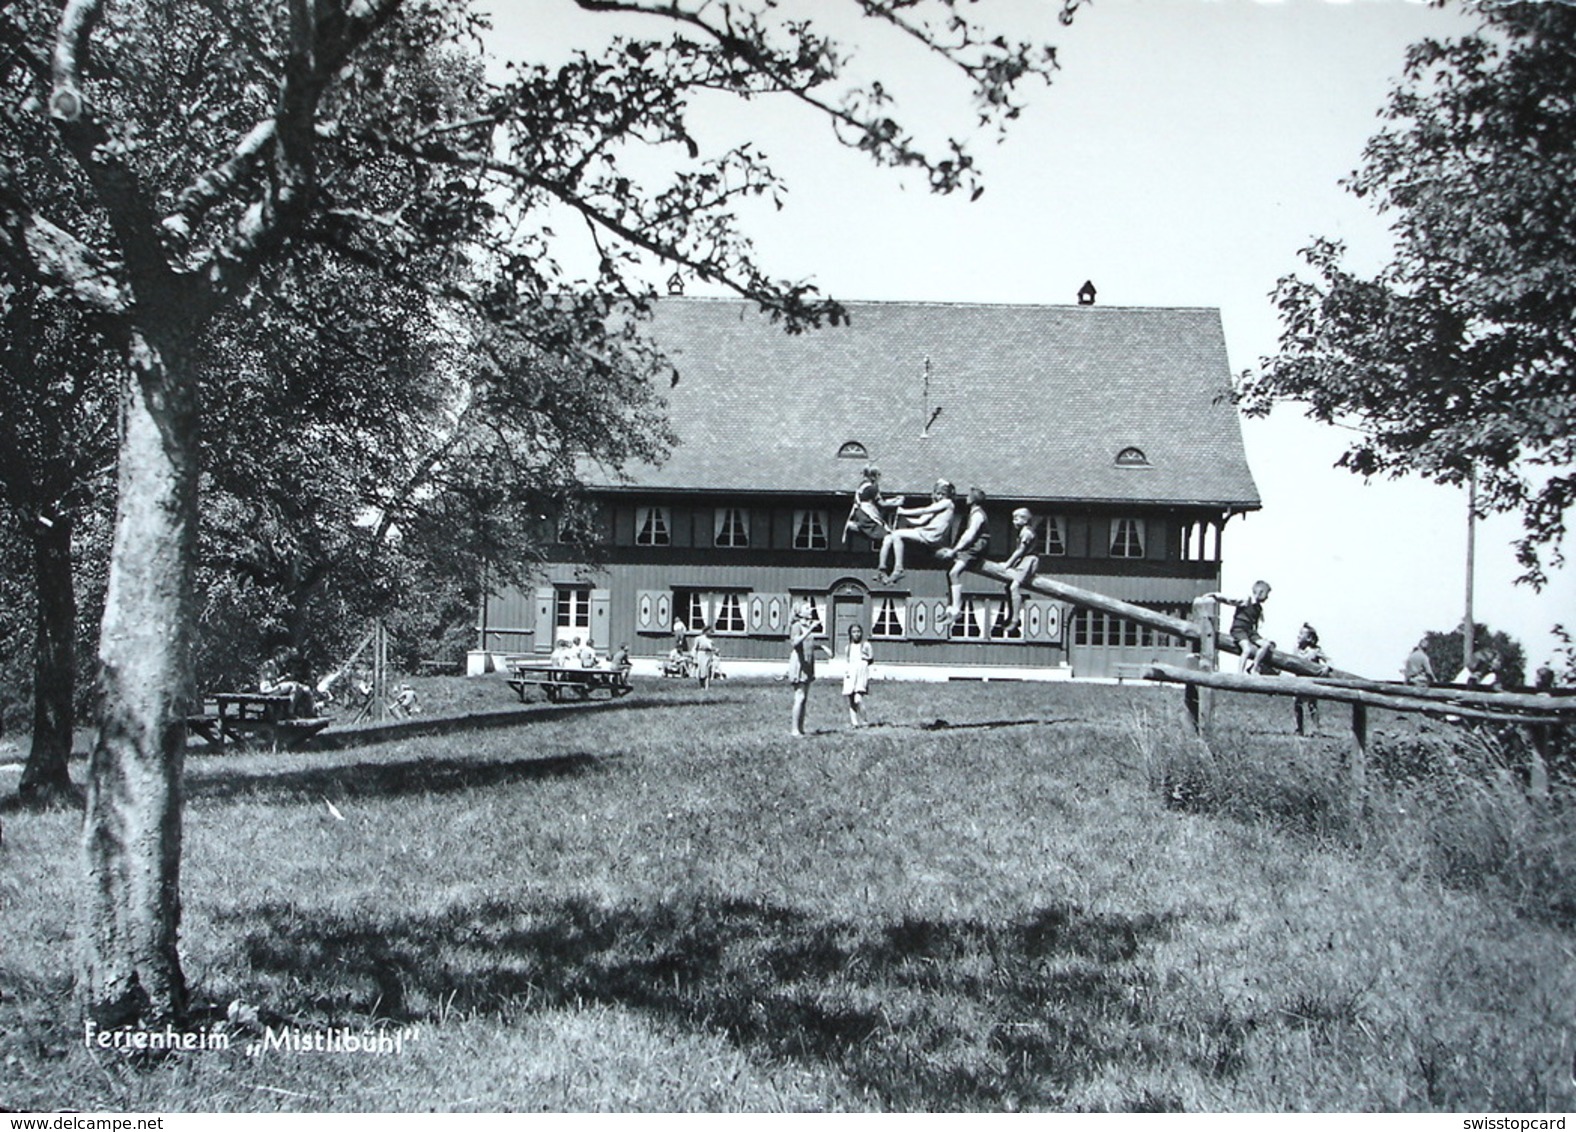 RICHTERSWIL Ferienheim Mistlibühl Gel. 1952 V. Hütten Zürich Photo Hch Streuli Richterswil - Hütten